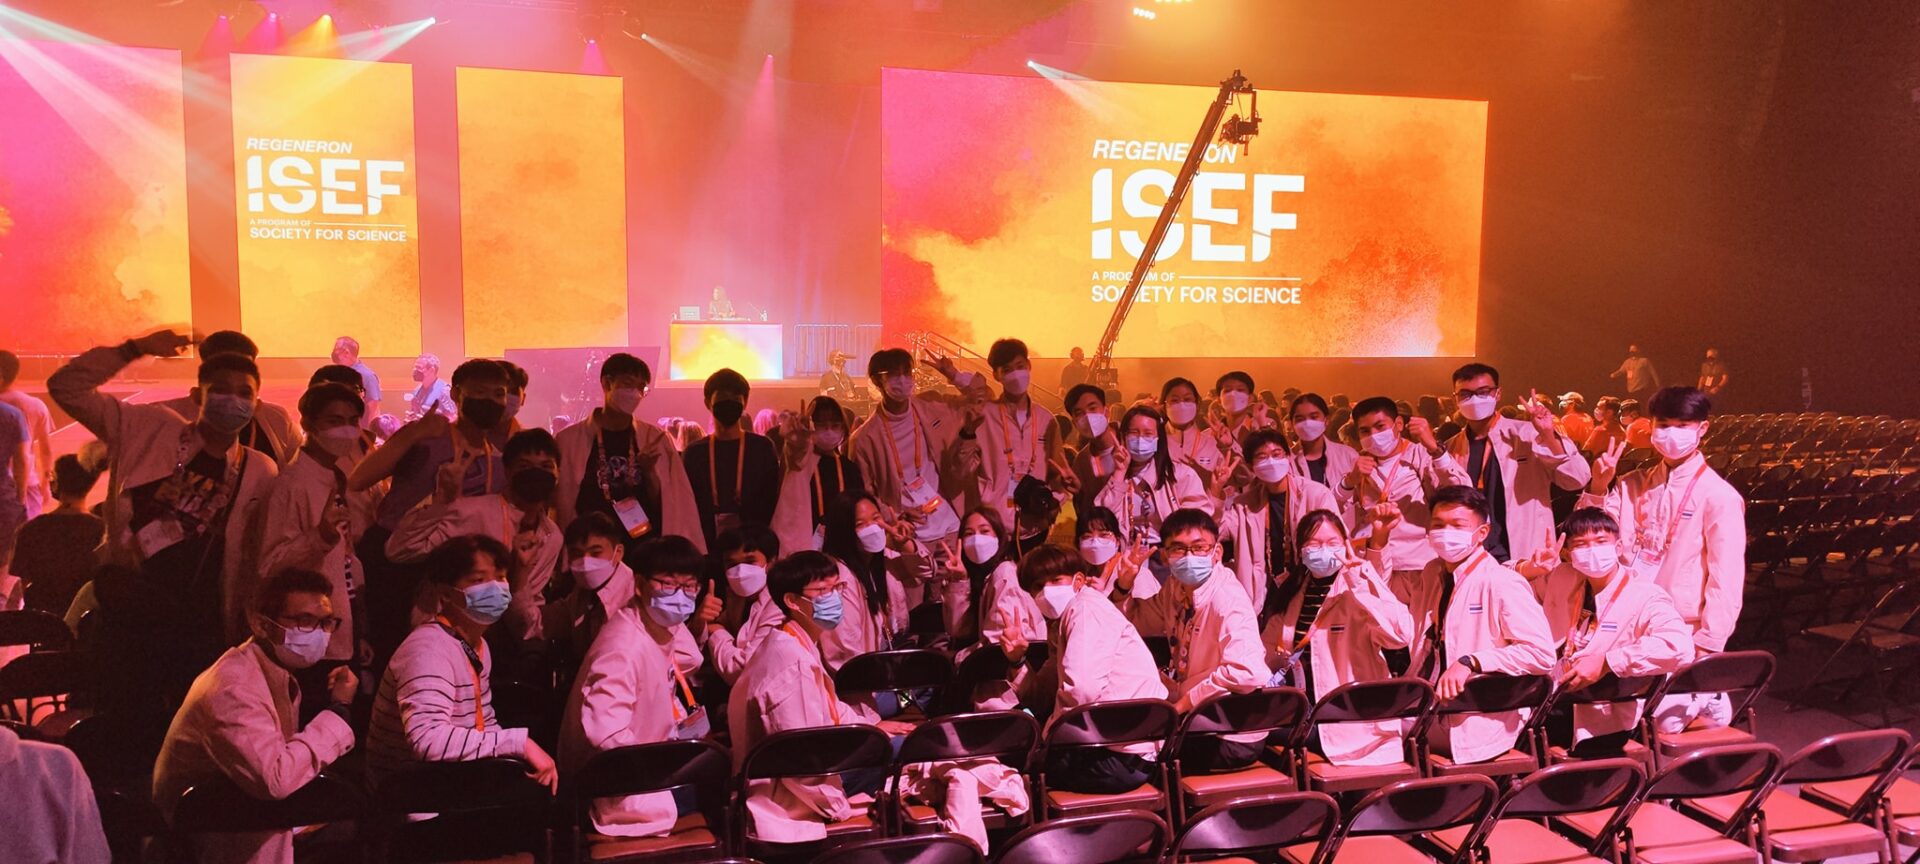 ศูนย์บริการวิชาการ มหาวิทยาลัยวลัยลักษณ์ ขอส่งกำลังใจให้แก่น้องๆ โครงการ YSC ตัวแทนประเทศไทยเข้าร่วมการแข่งขันในงาน Regeneron ISEF 2022 ณ เมืองแอตแลนตา มลรัฐจอร์เจีย สหรัฐอเมริกา